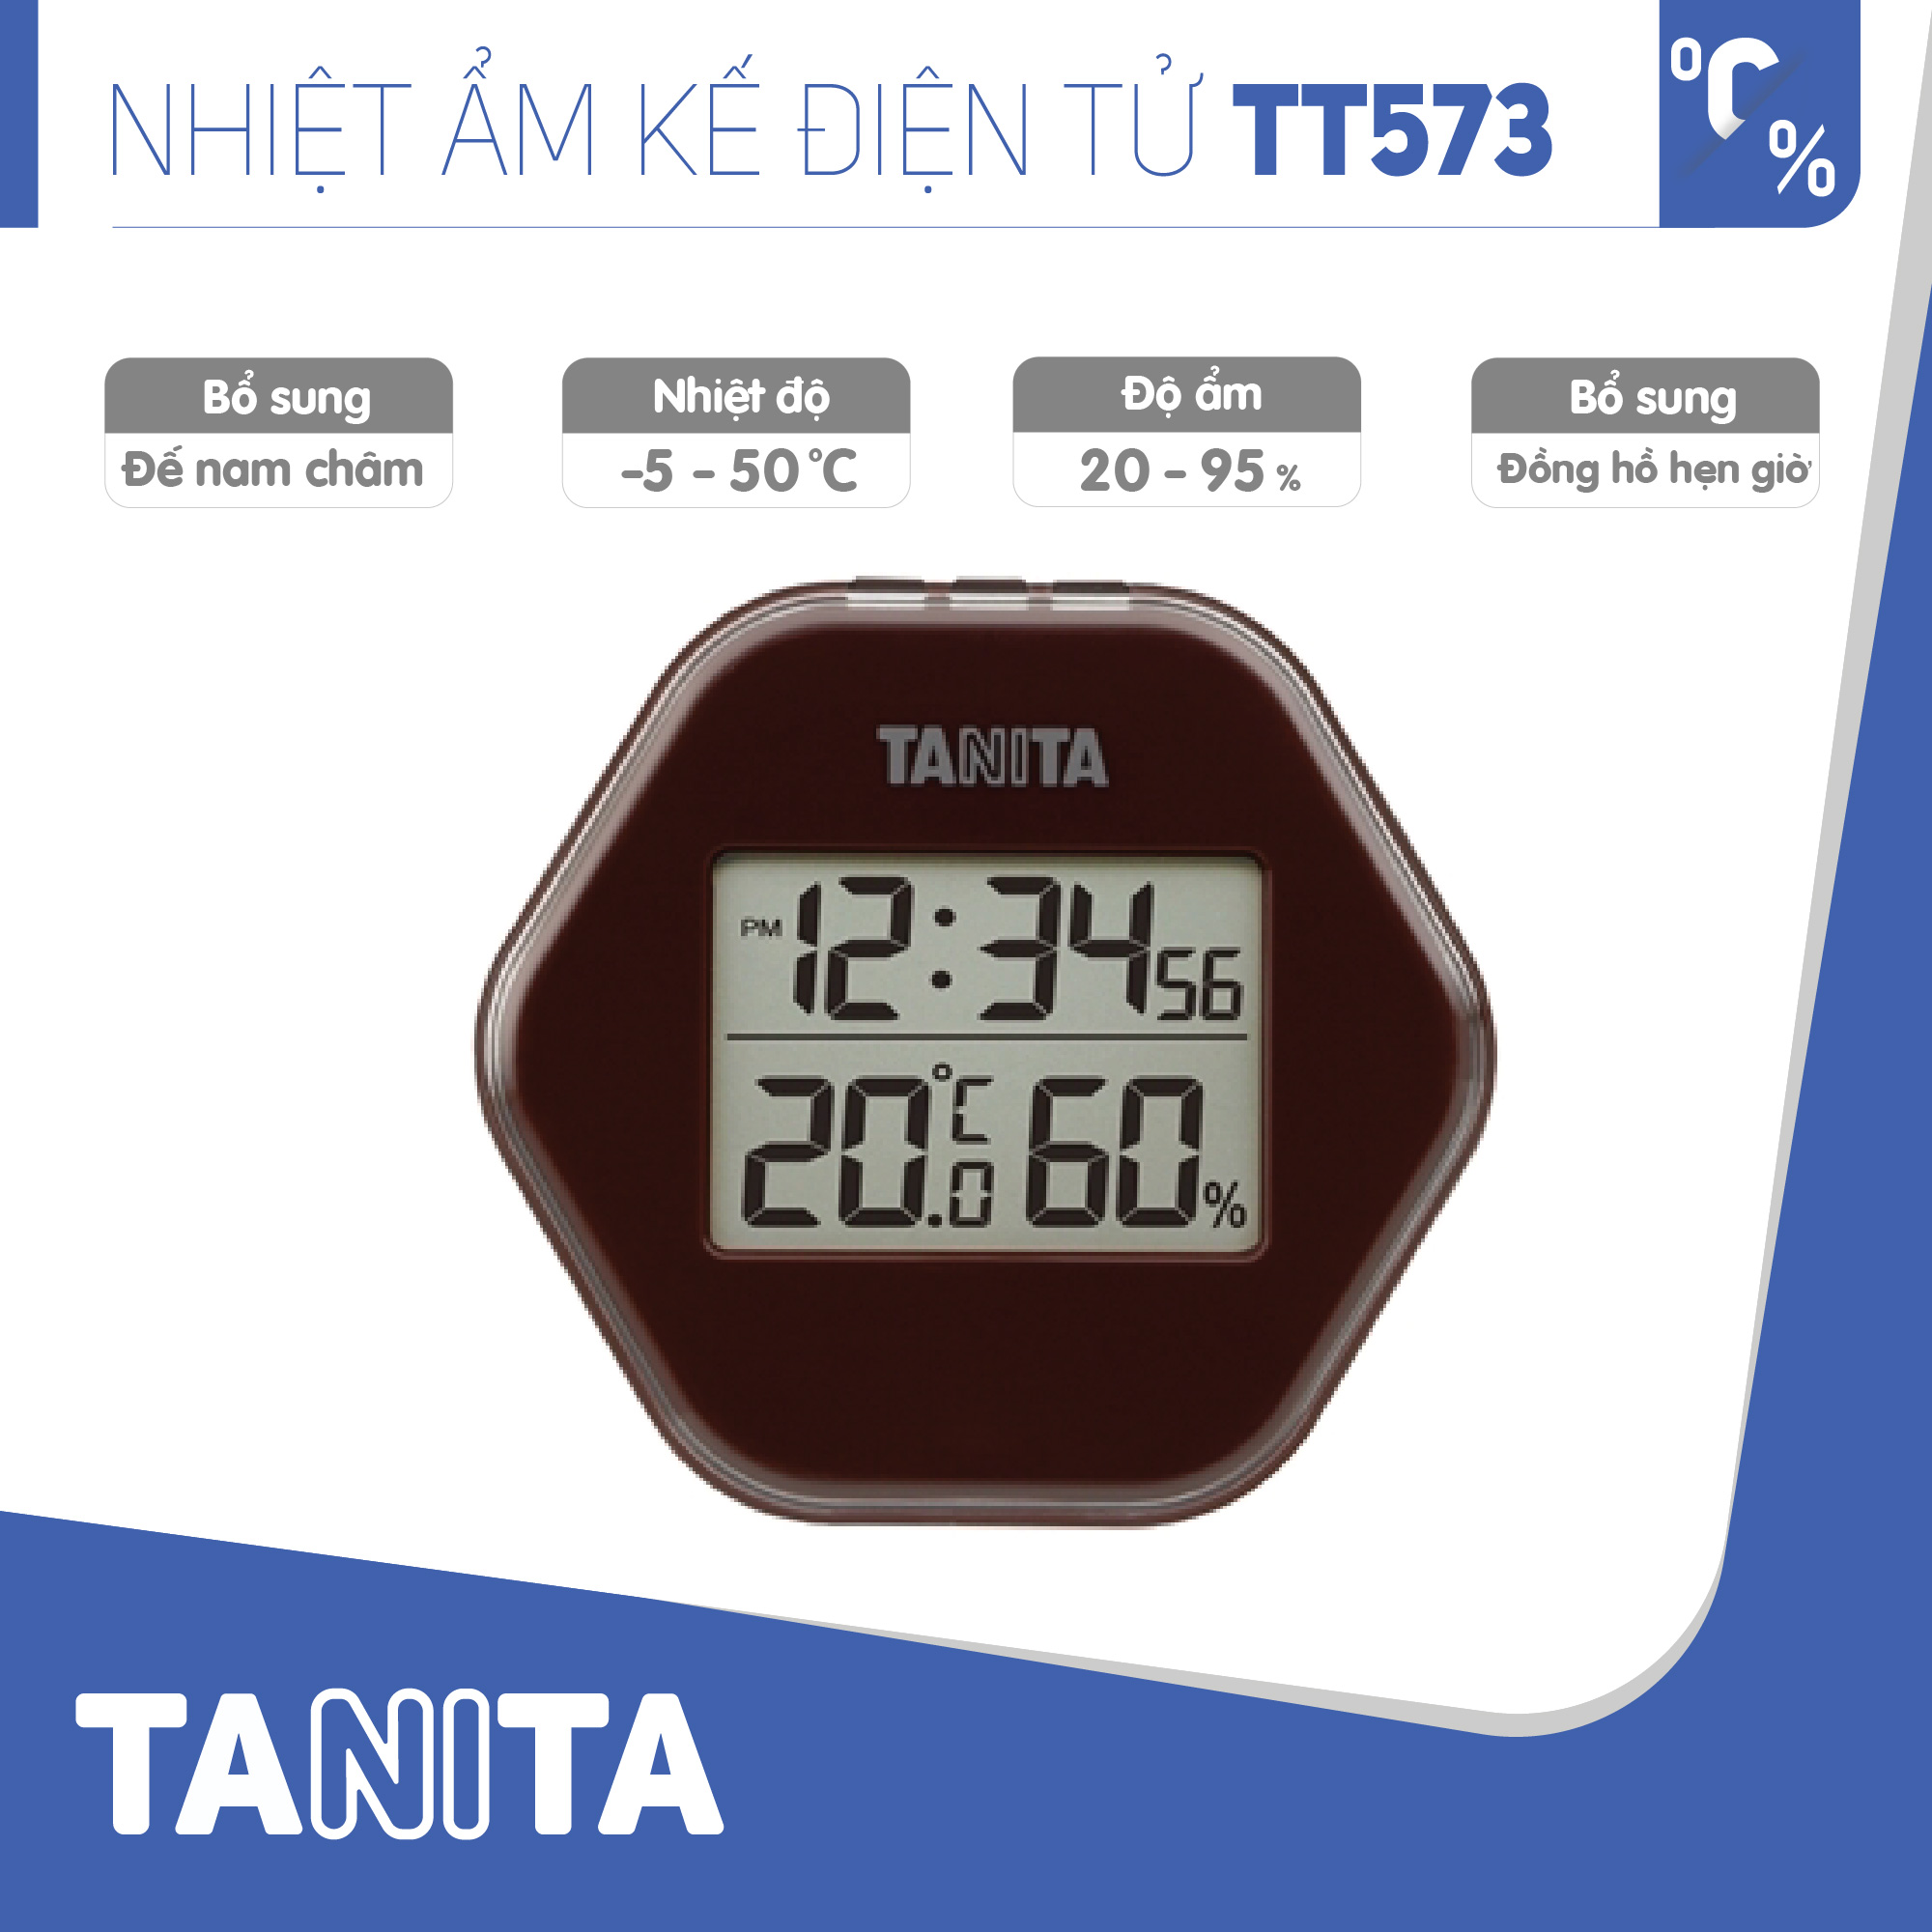 Nhiệt ẩm kế điện tử TANITA TT573 chính hãng nhật bản,thiết bị đo độ ẩm nhiệt độ chính xác,màn hình rõ ràng,hiển thị ngày giờ chuông báo thức,có lỗ treo,chân để bàn phù hợp trong phòng lạnh, bệnh viện, gia đình có trẻ sơ sinh